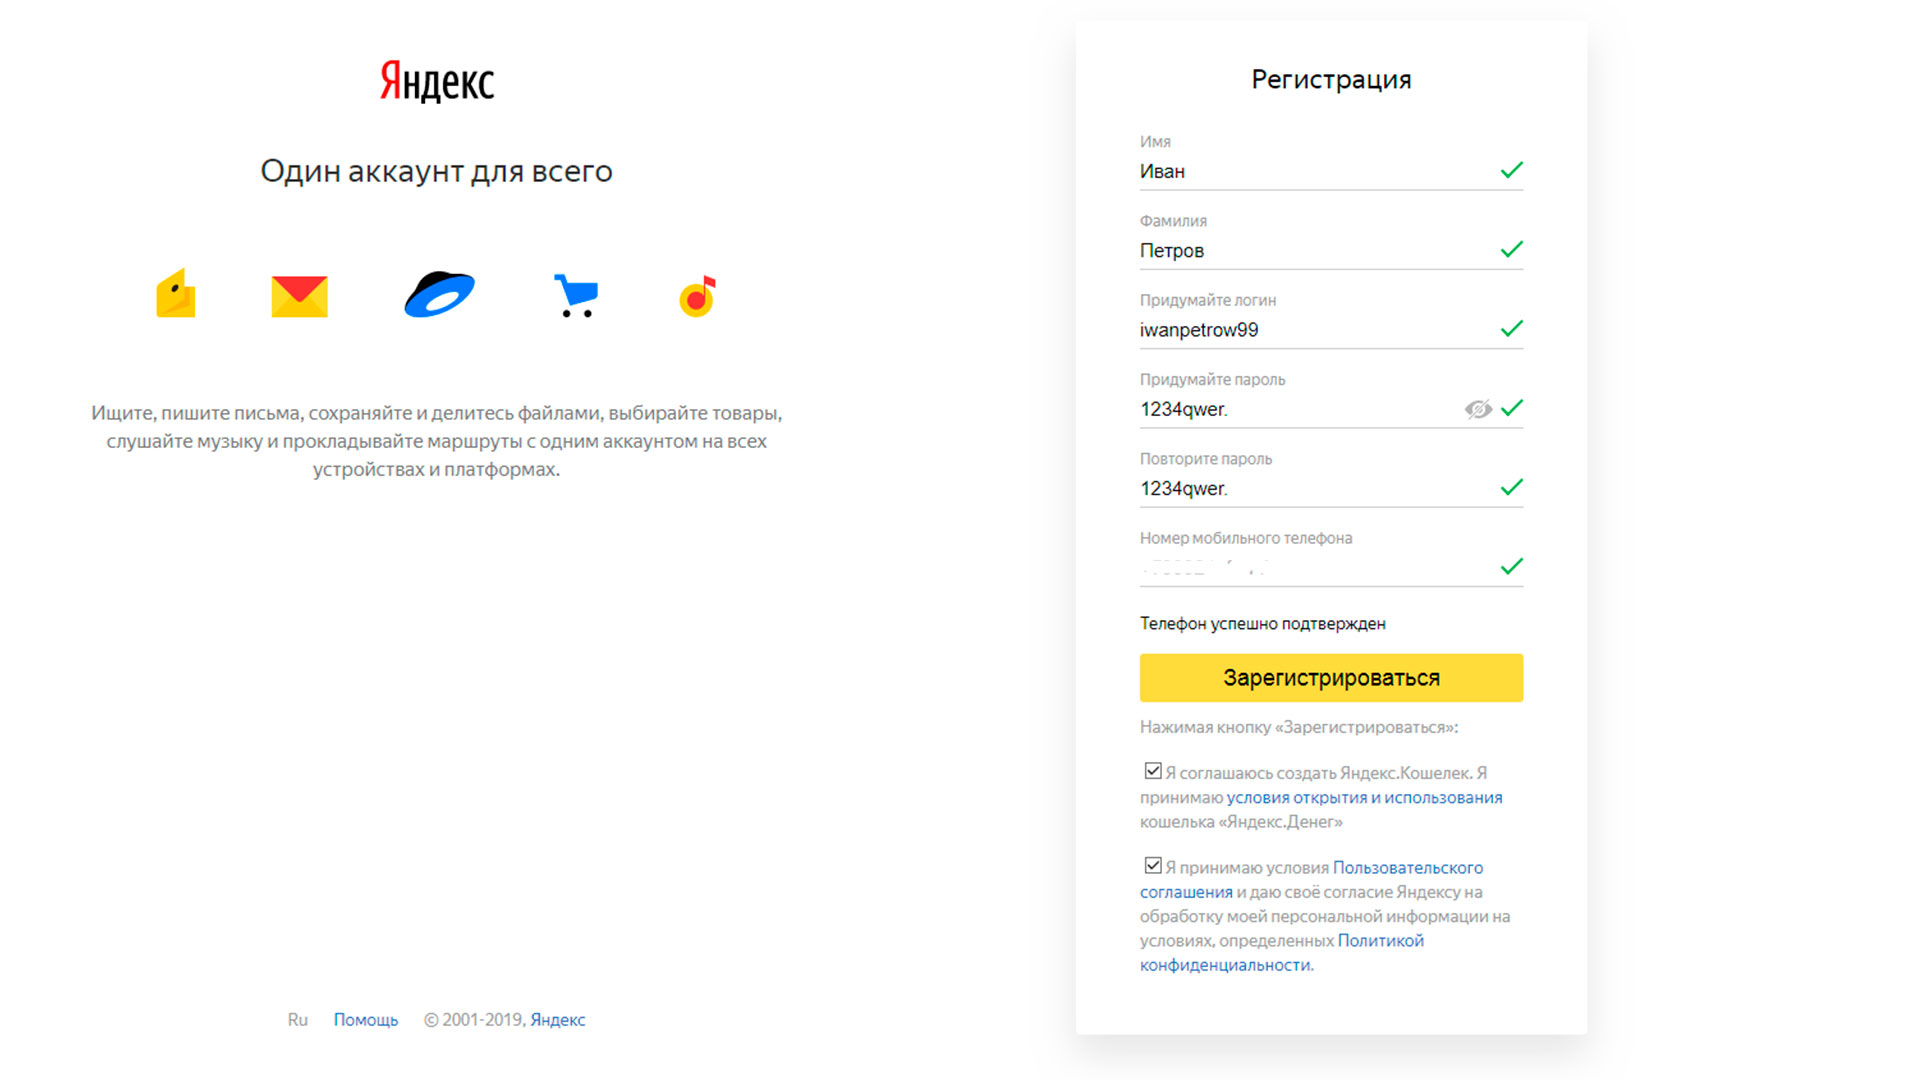 Скриншот регистрация аккаунта в Яндекс шаг3 из статьи Как зарегистрировать аккаунт в Яндекс